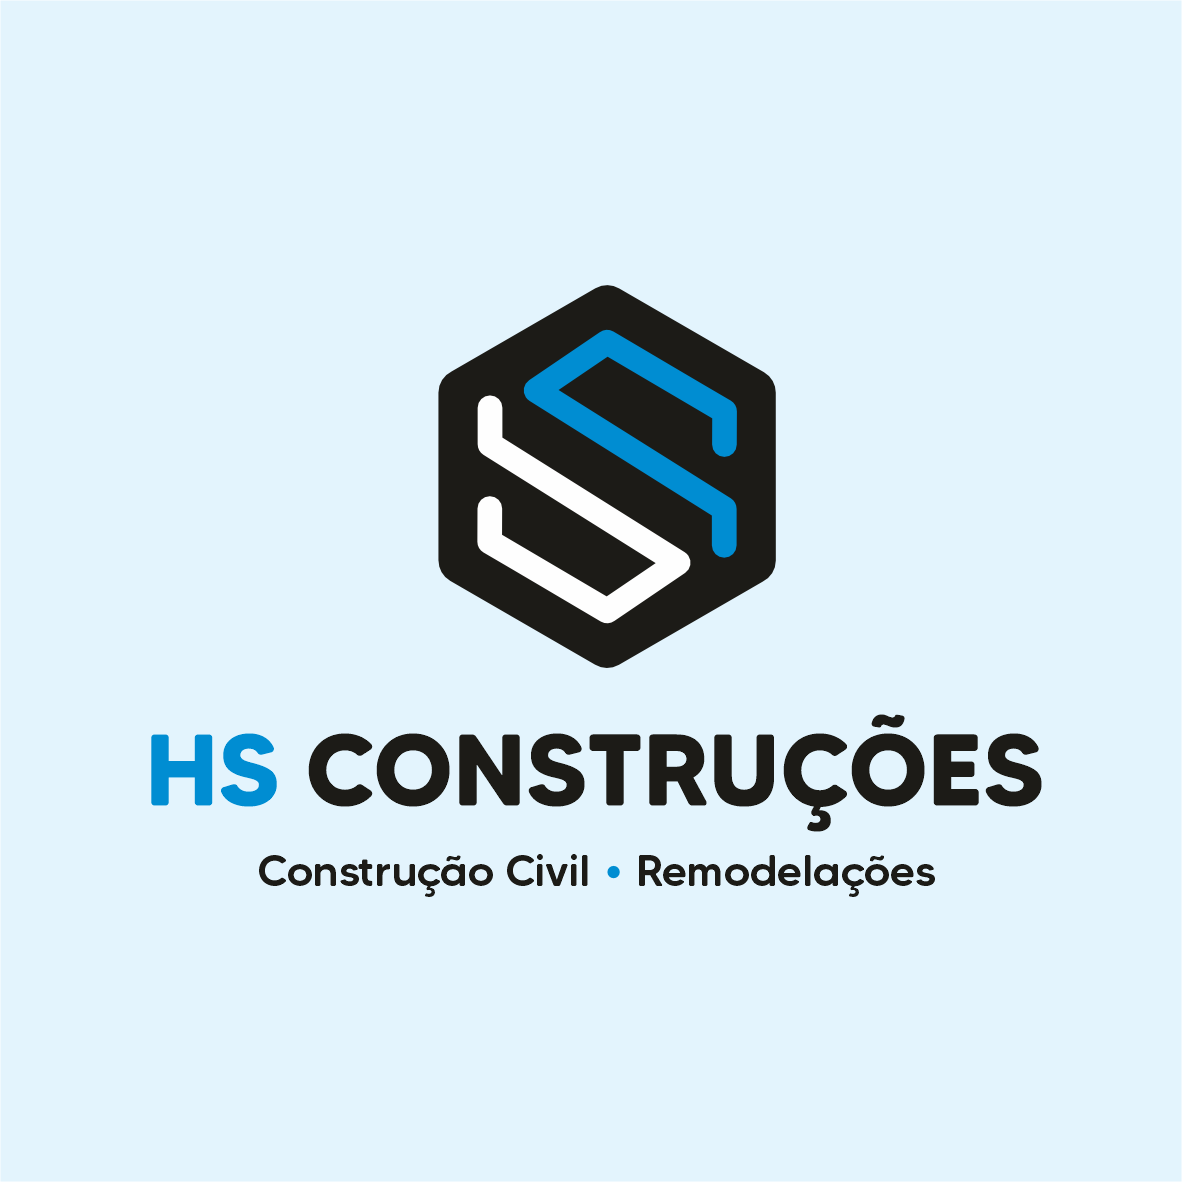 Construção civil e remodelações